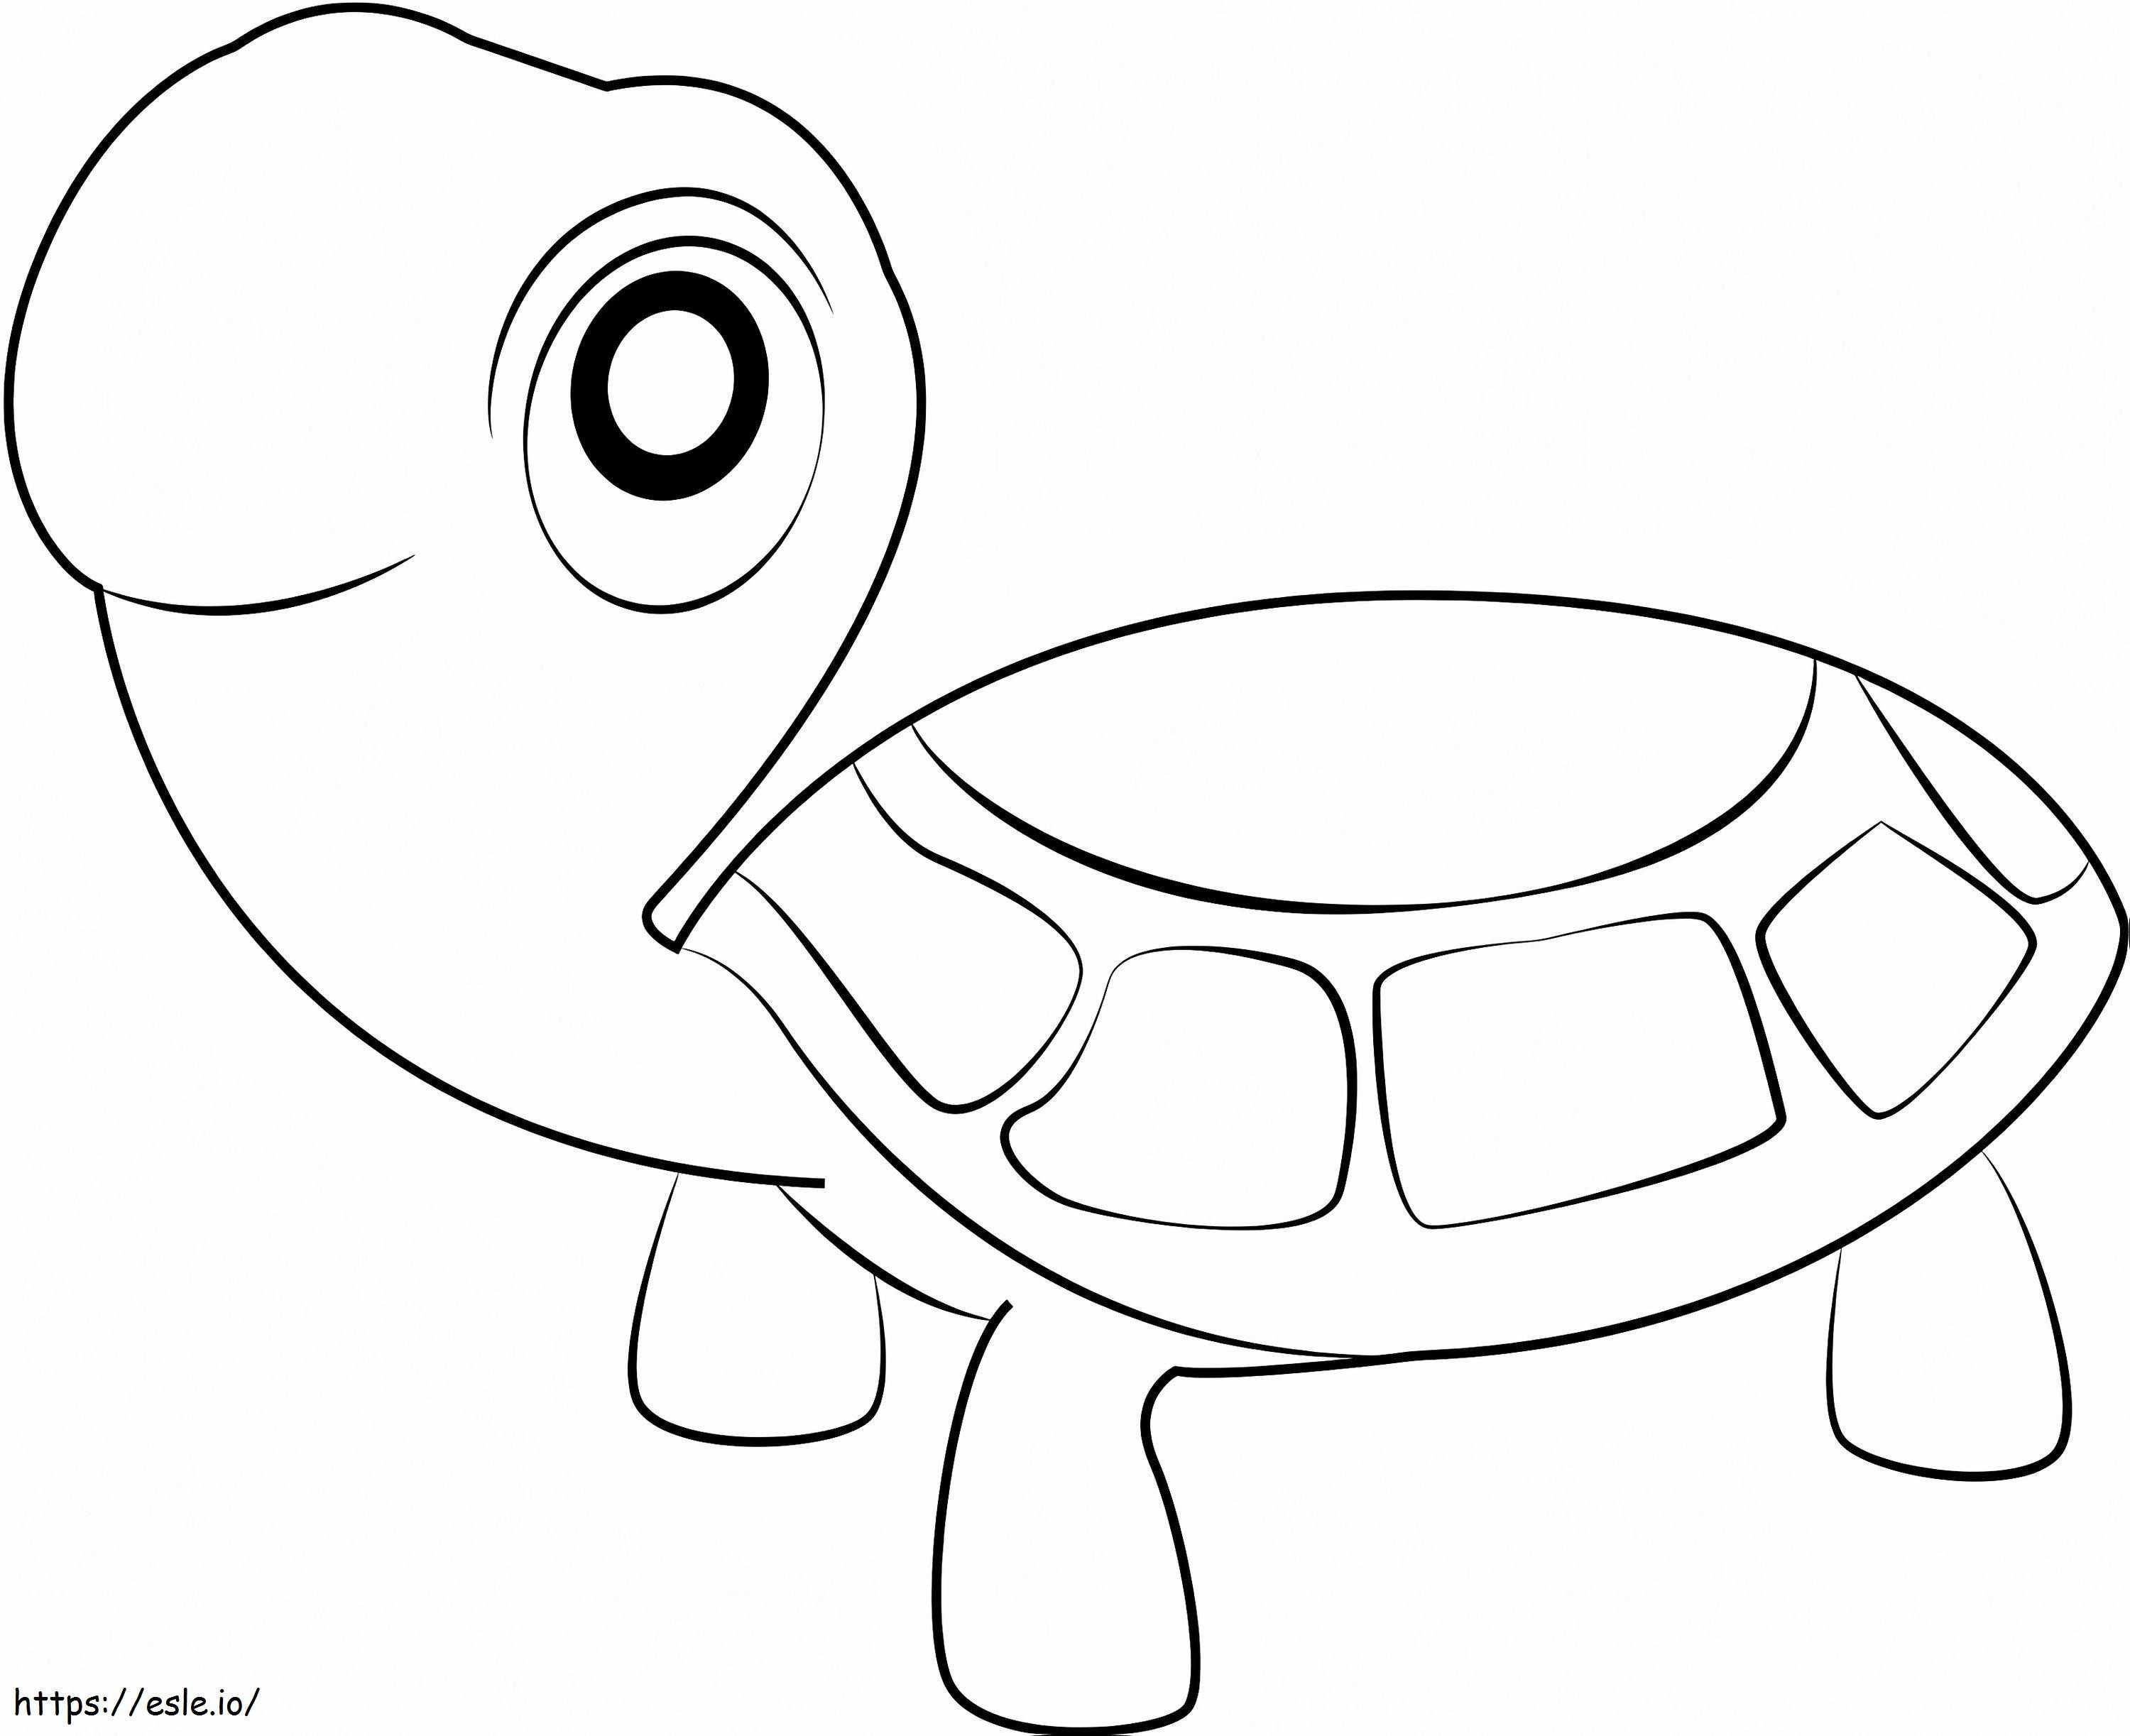 1530323207 Die Schildkröten ausmalbilder